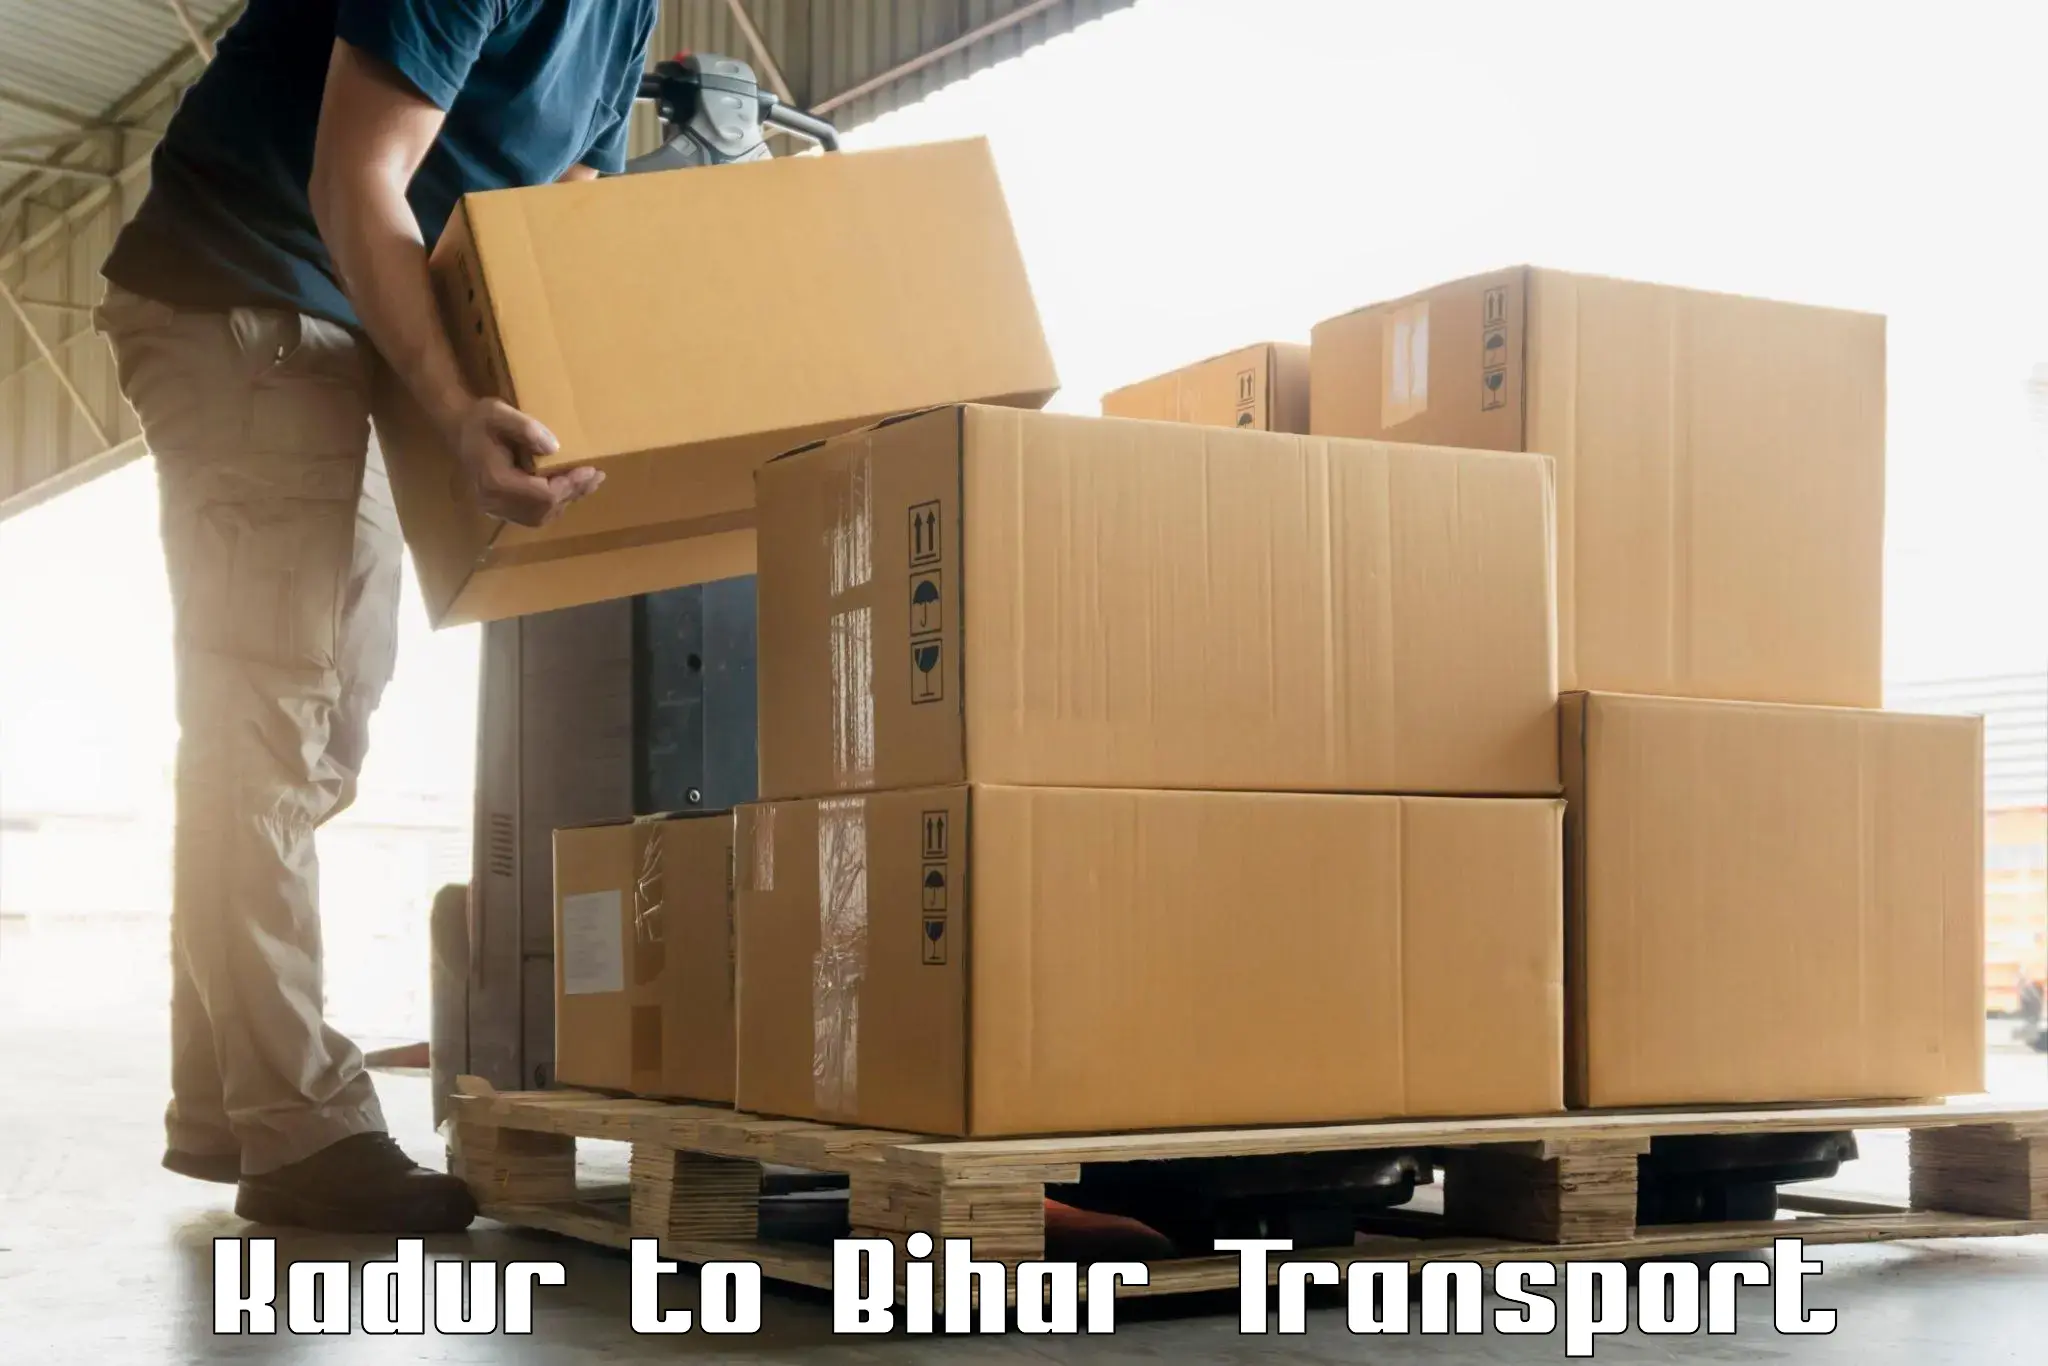 Container transport service Kadur to Tekari